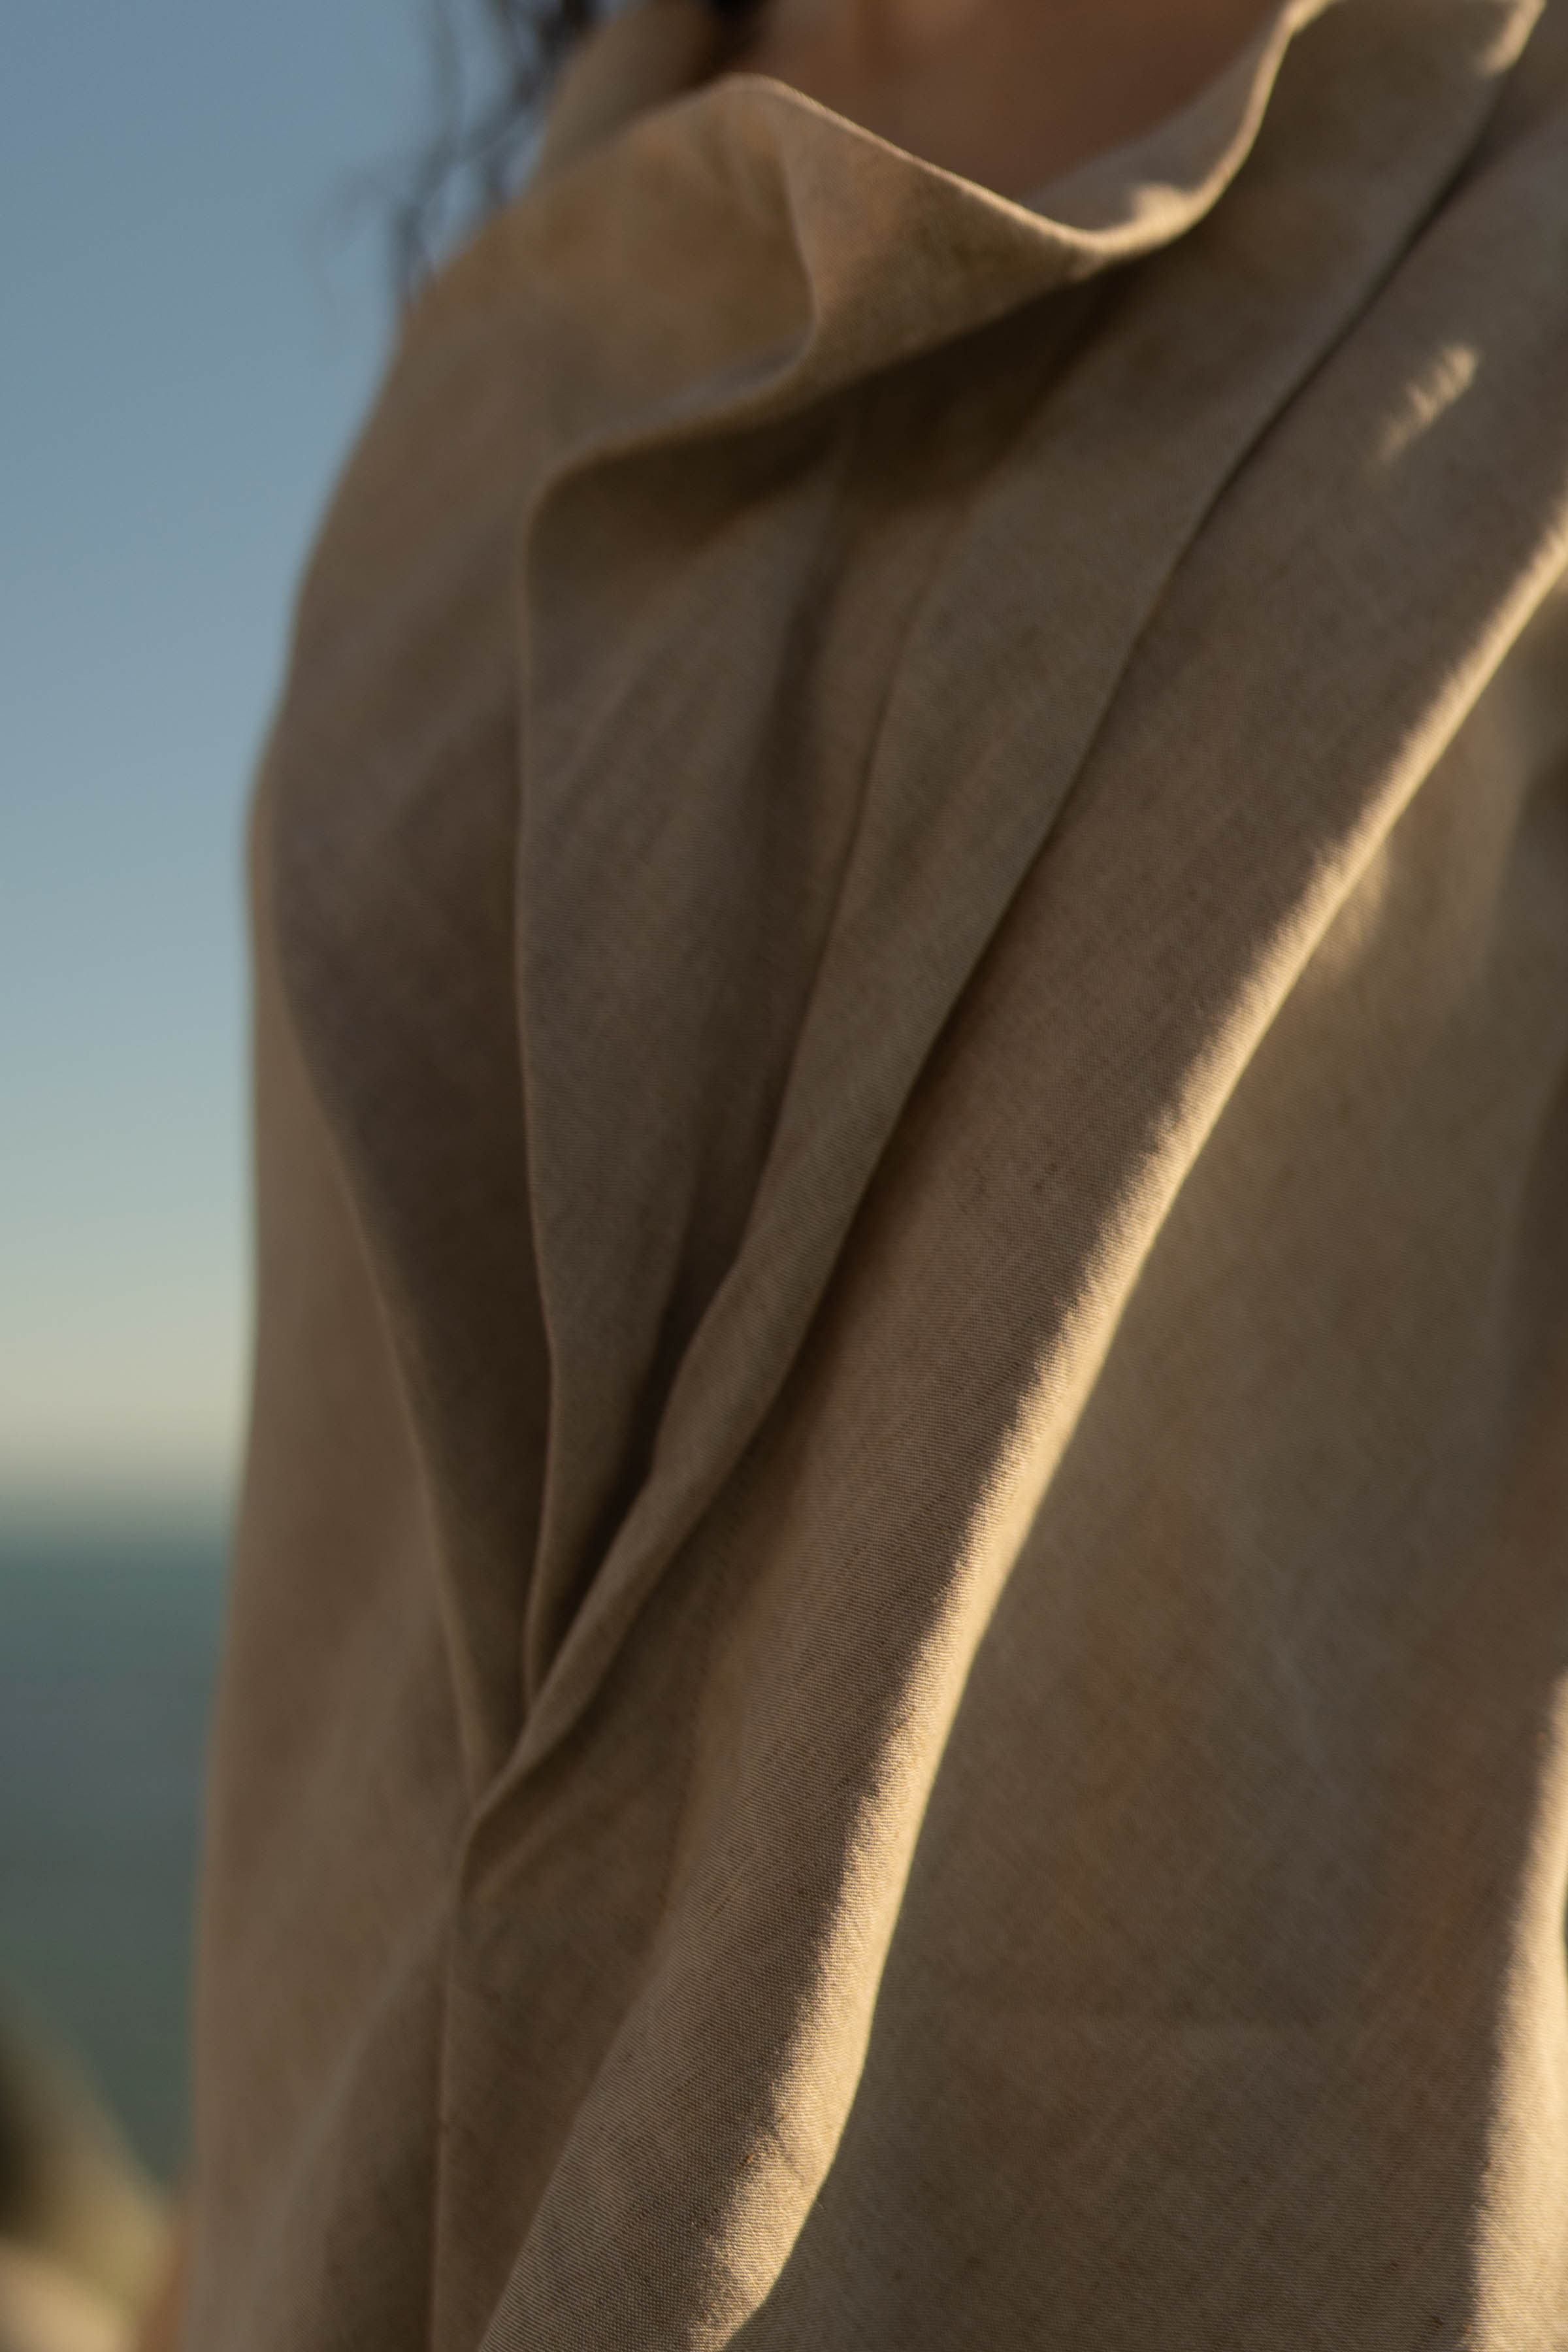 Блуза с асимметричными складками, без рукавов, лён 02 Песок (sable) от Lesel (Лесель)! Заказывайте по ✆ 8 (800) 777 02 37